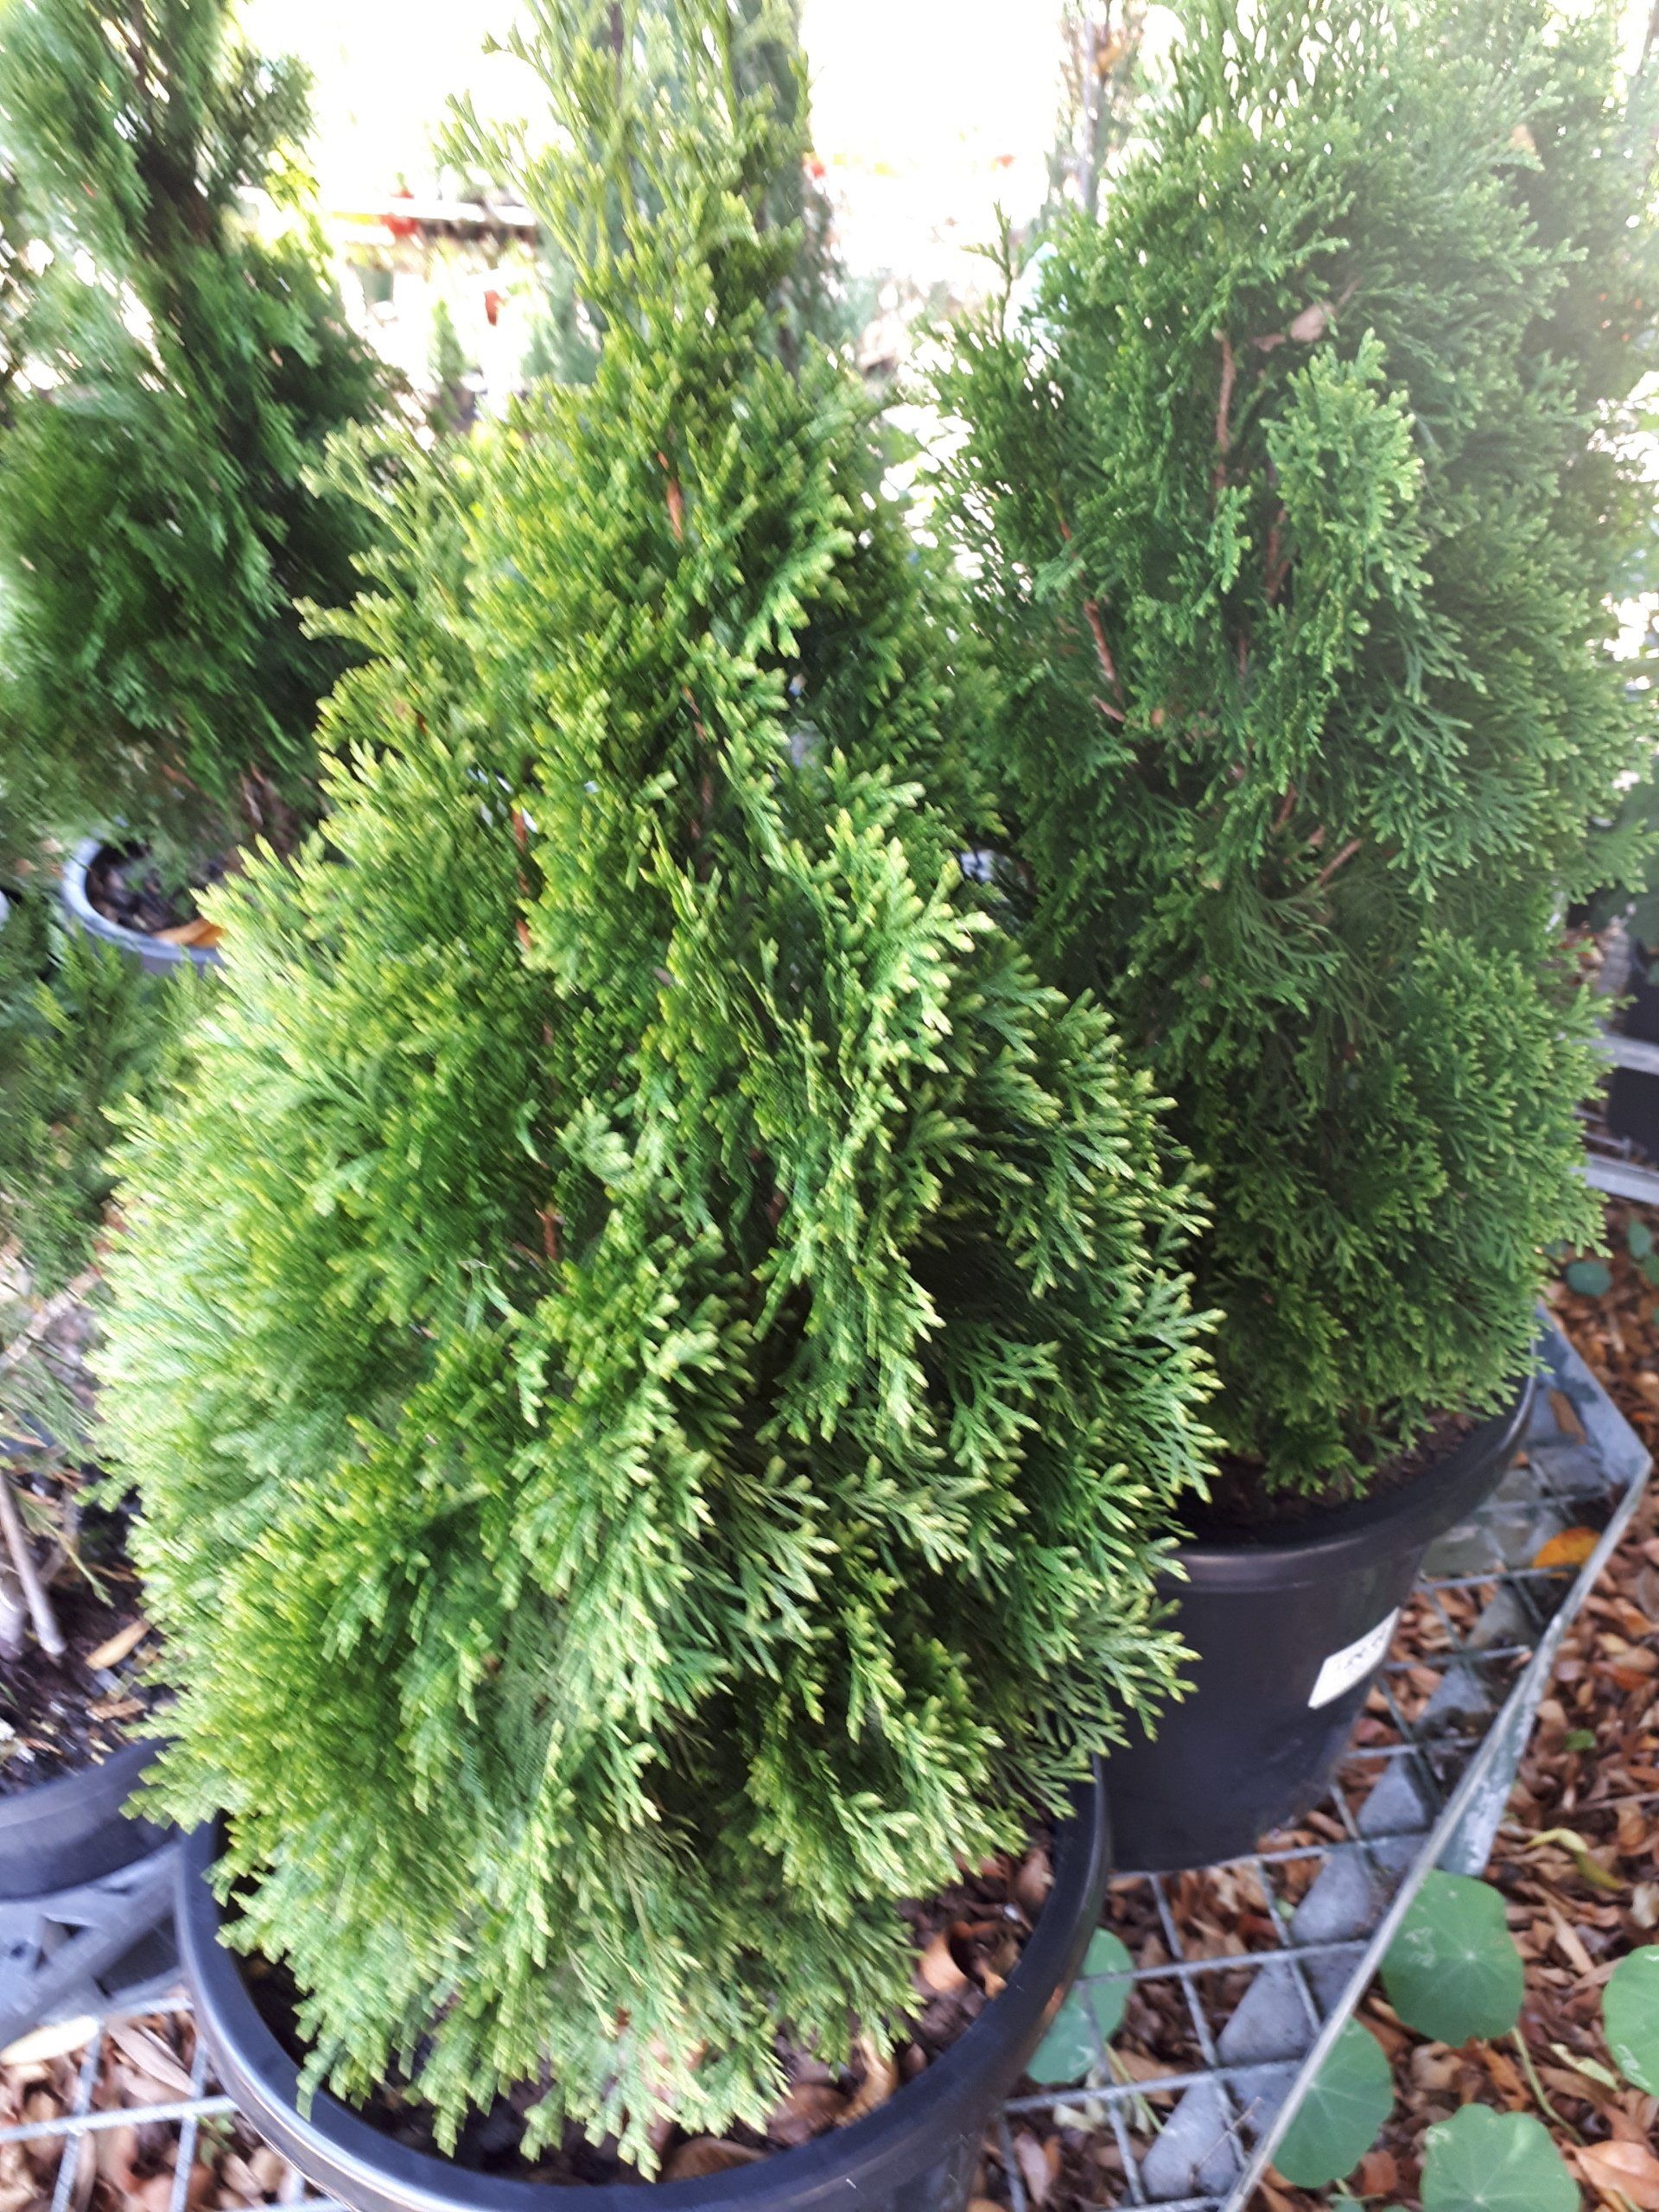 Thuja Smaragd Evergreen Conifer in a garden pot